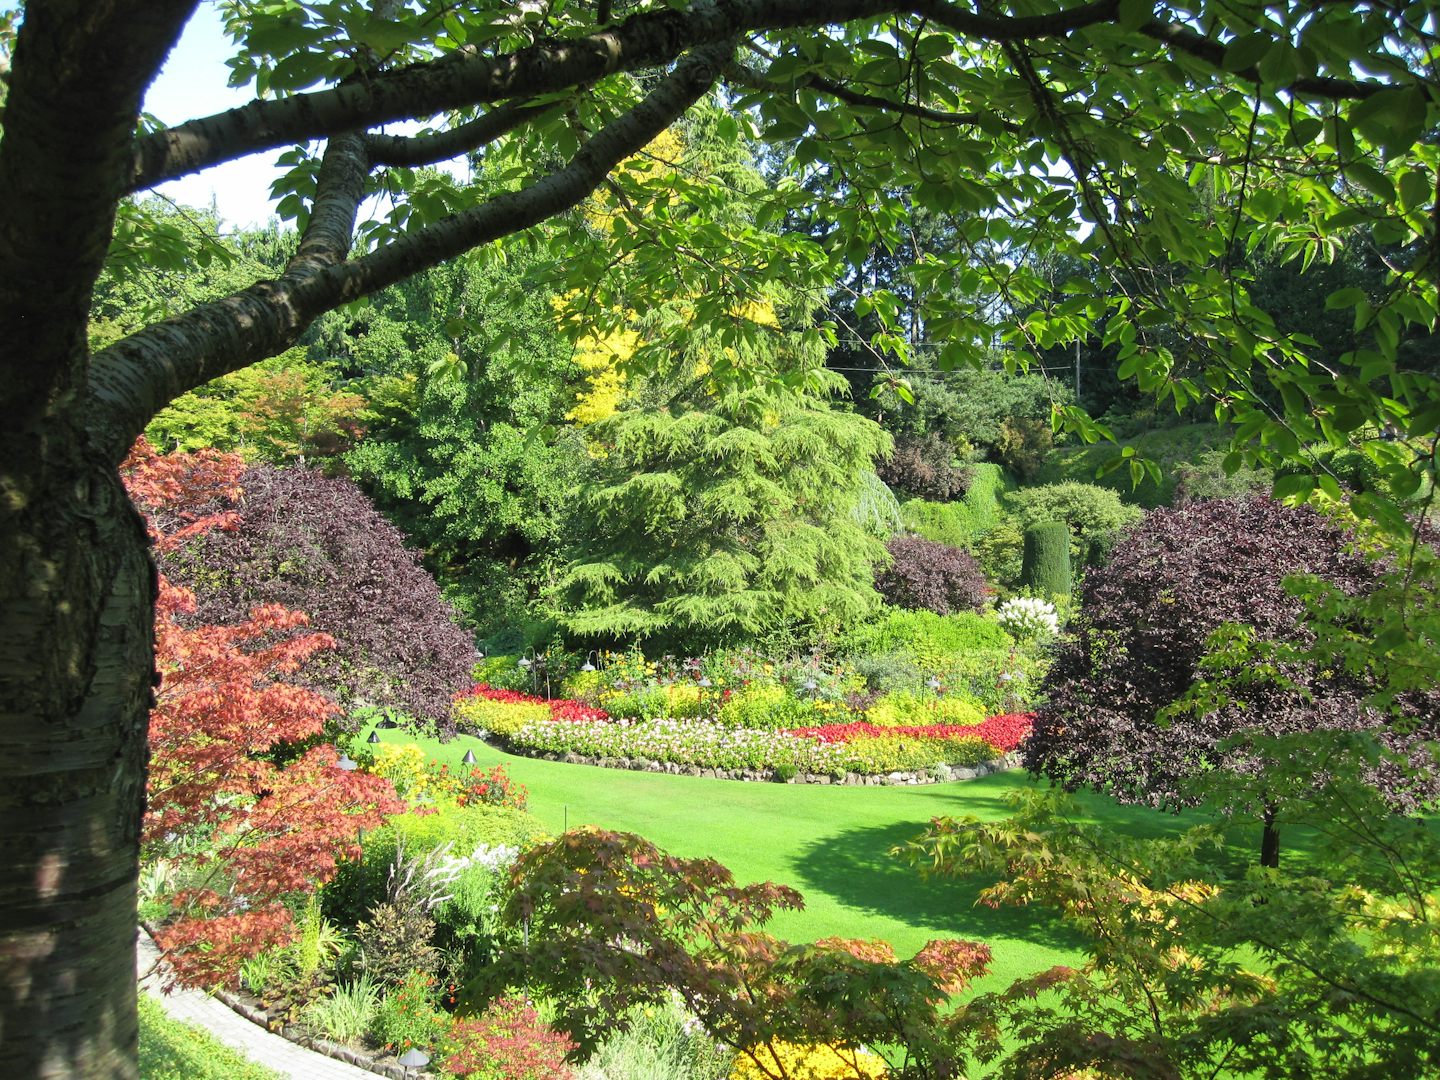 Bucharest Gardens in Victoria